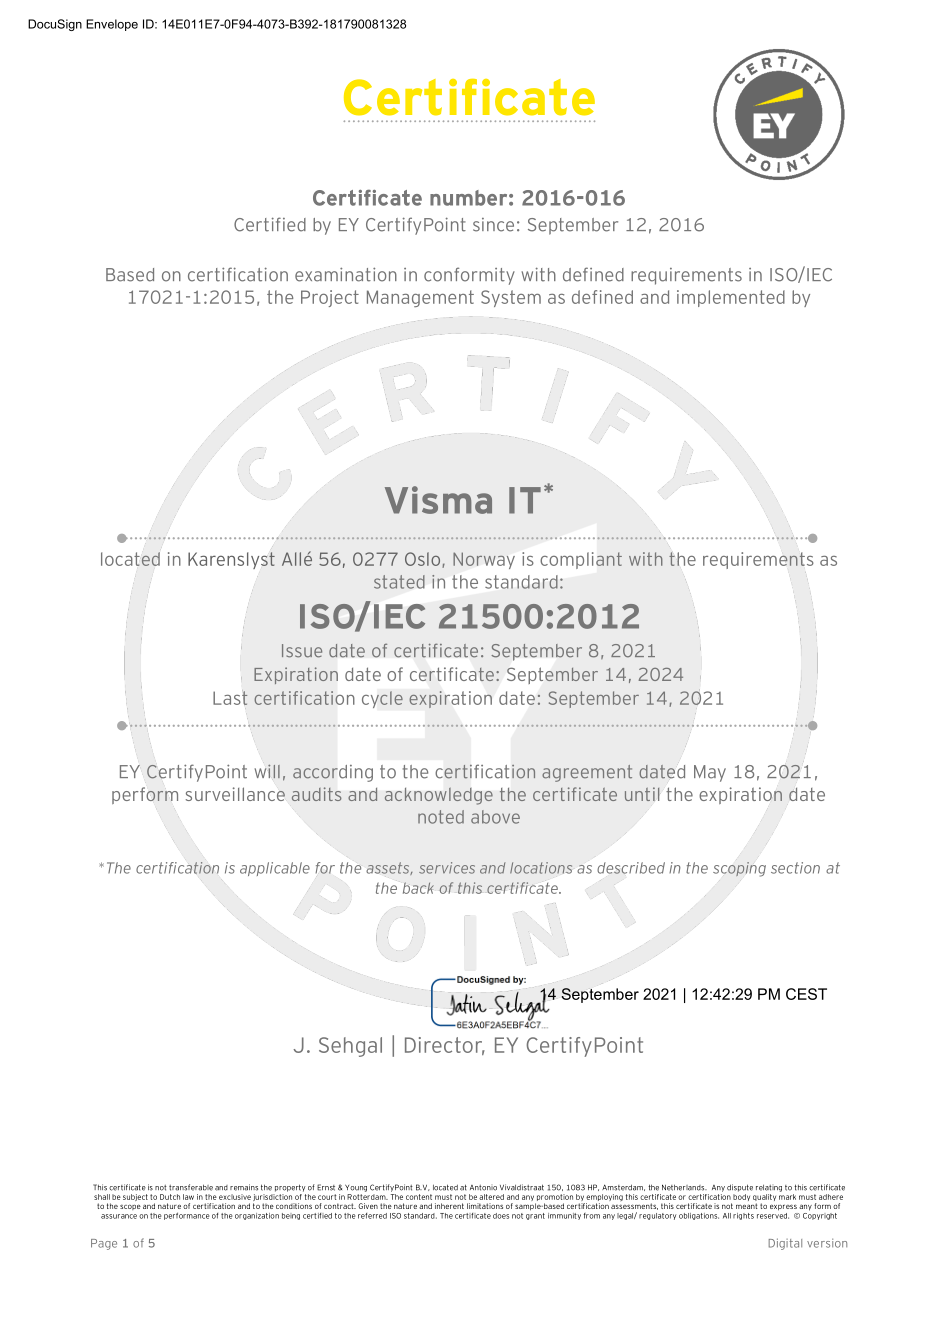 A screenshot of the 21500 certificate.